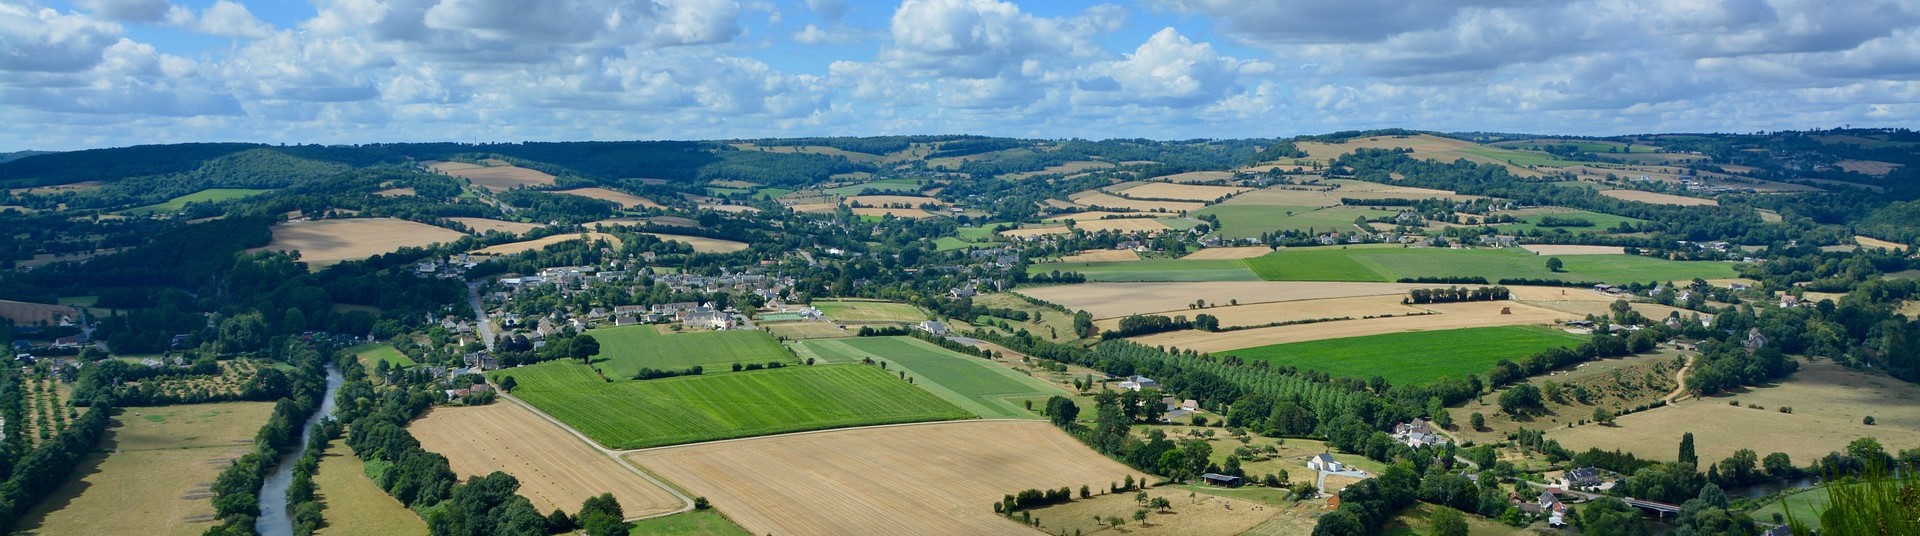 Vue panoramique du paysage normand